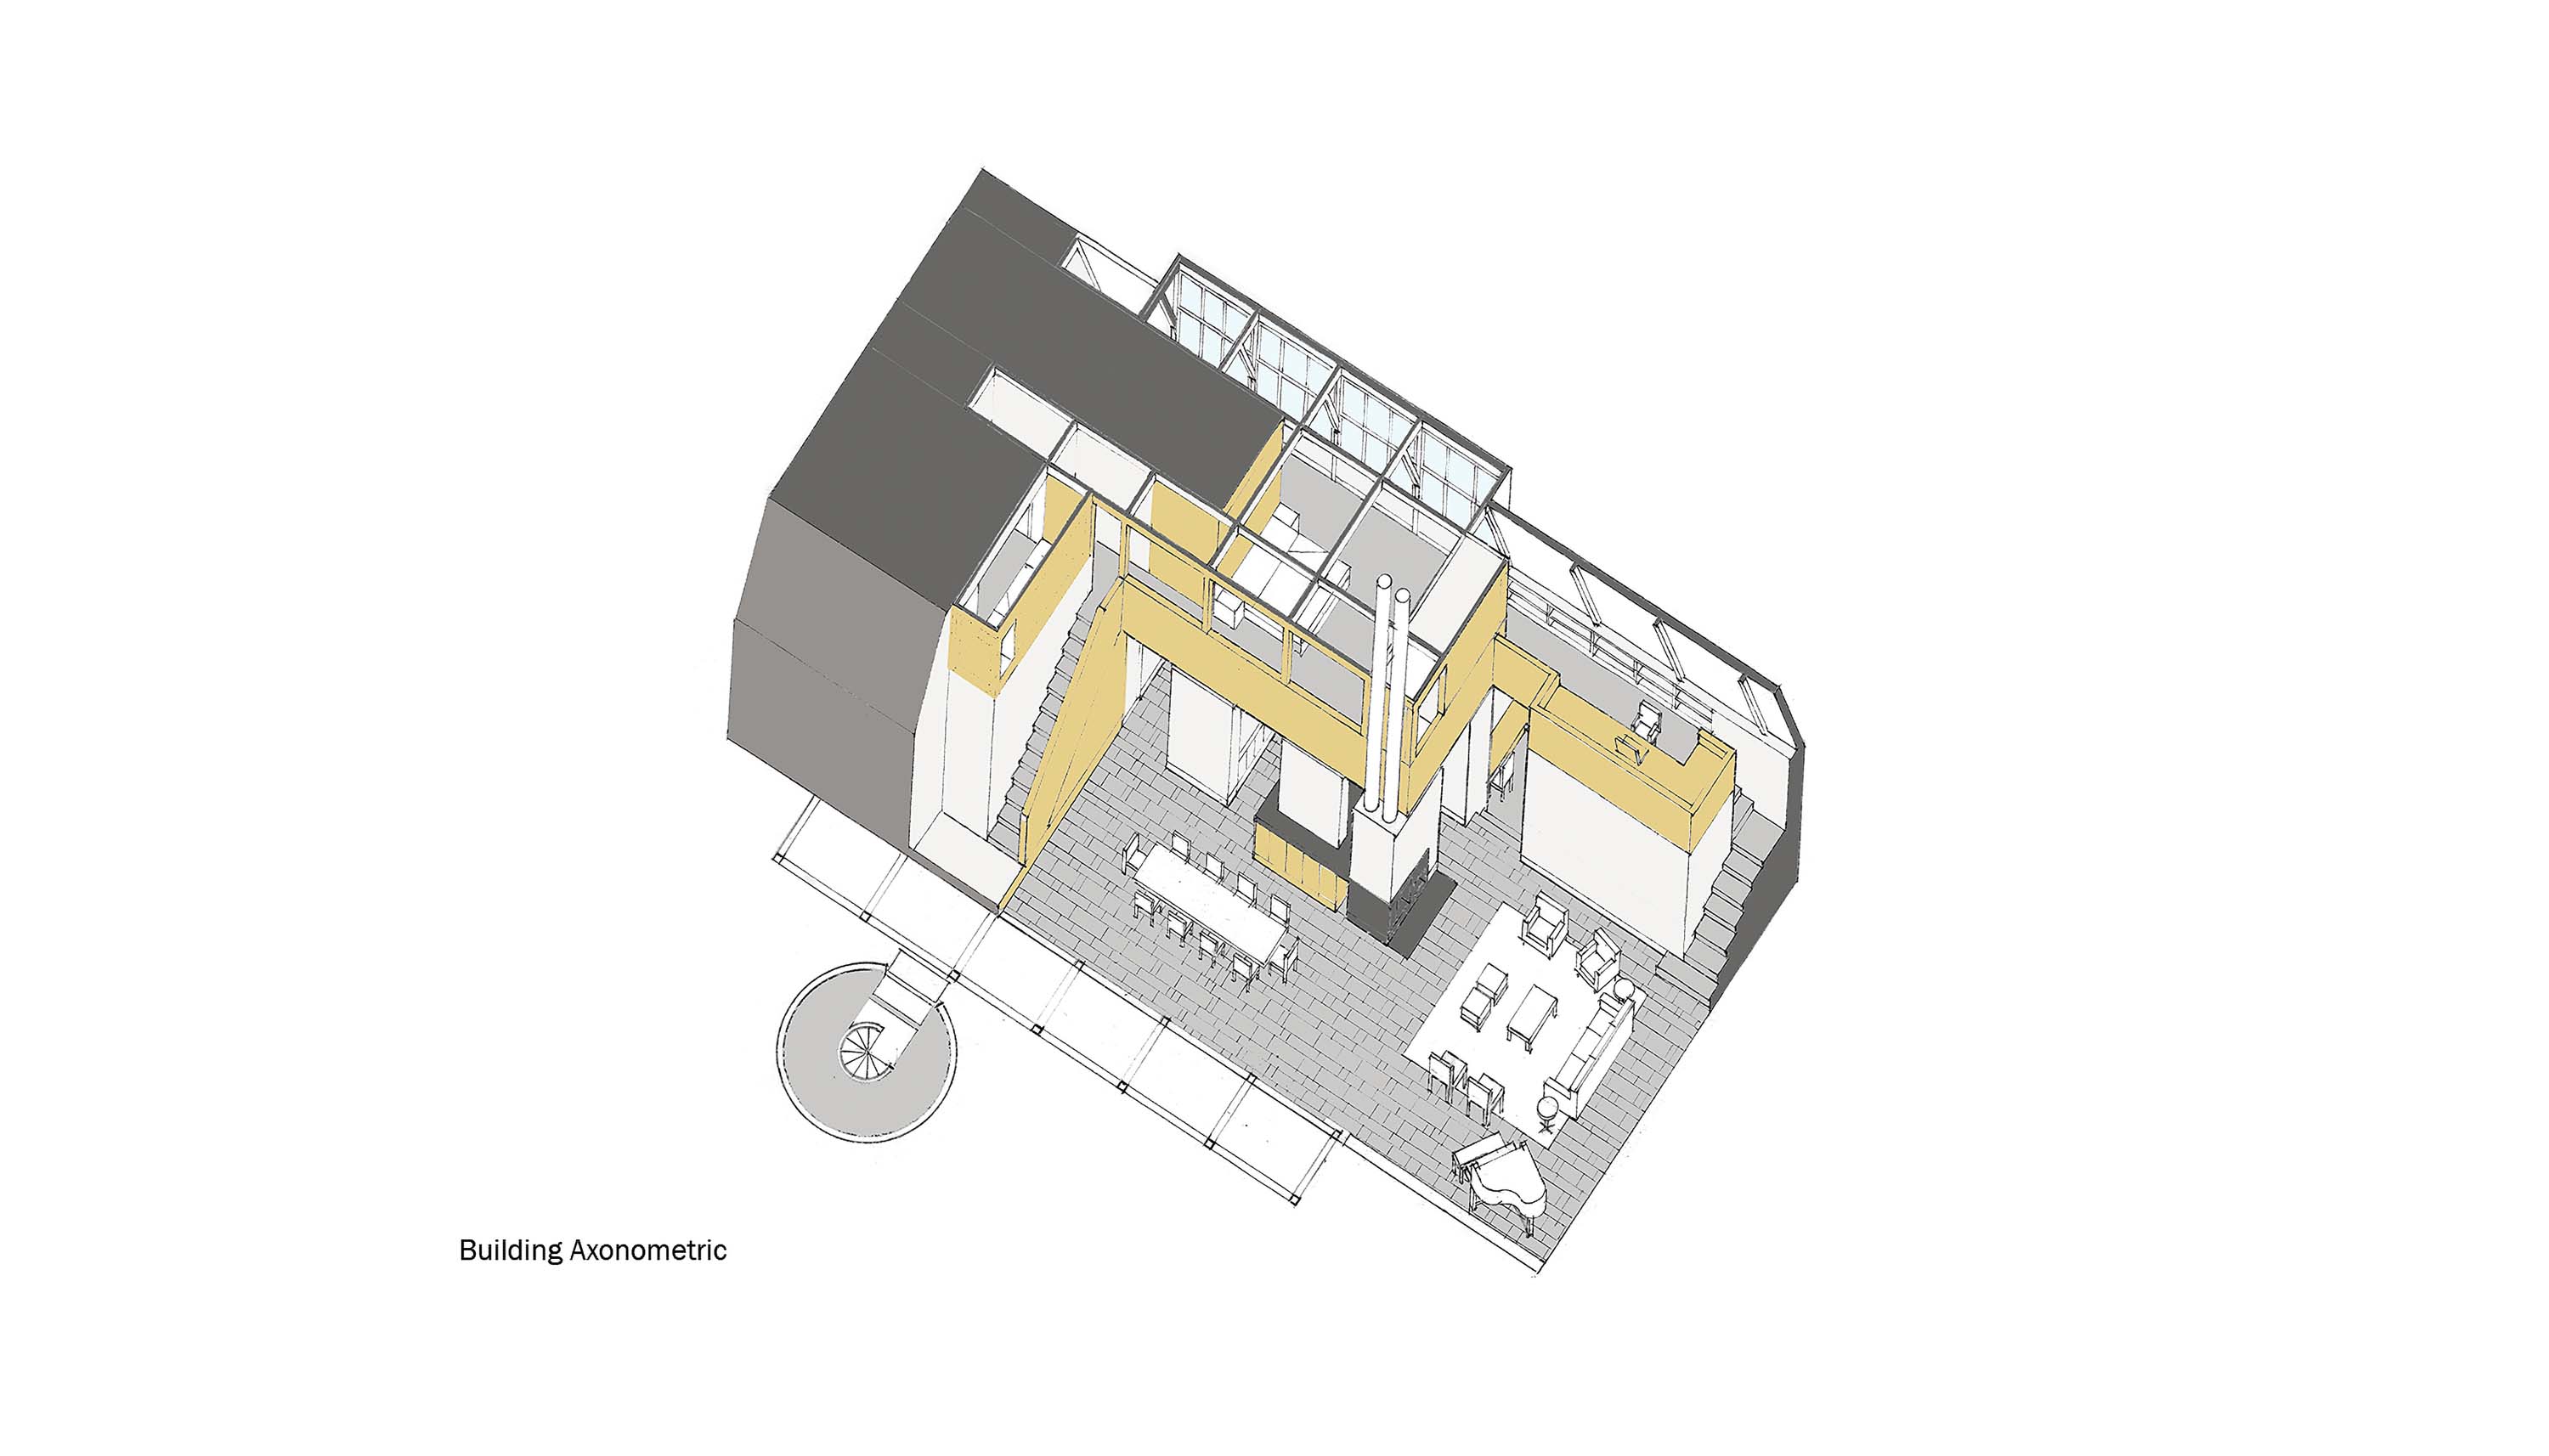 Building Axonometric of Modern Barn by Specht Novak Architects.